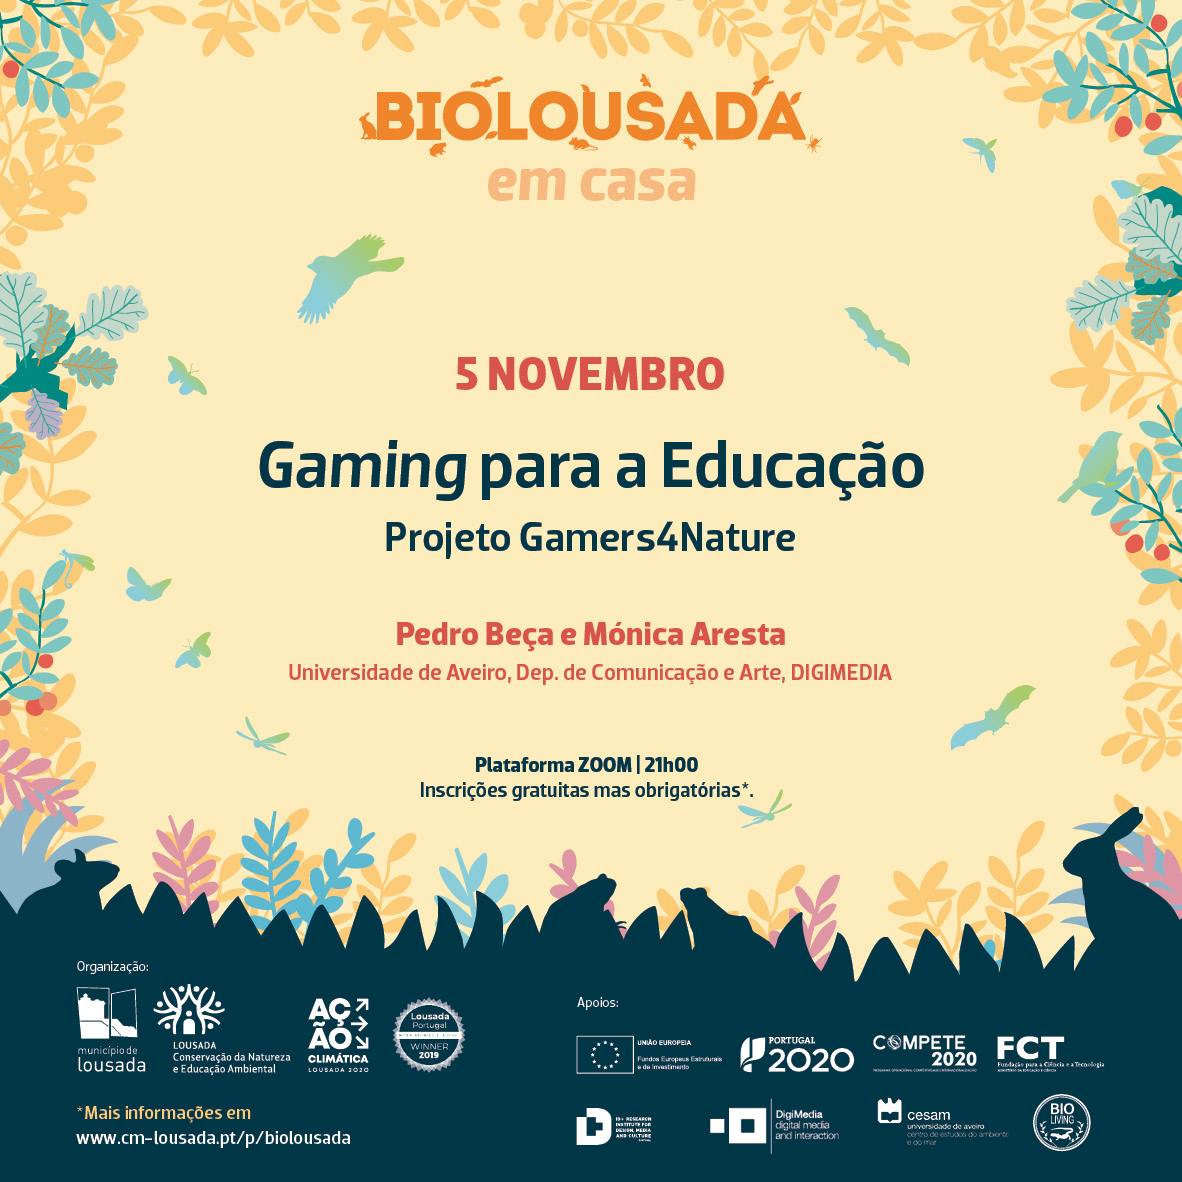 BioLousada - Gaming para a Educação